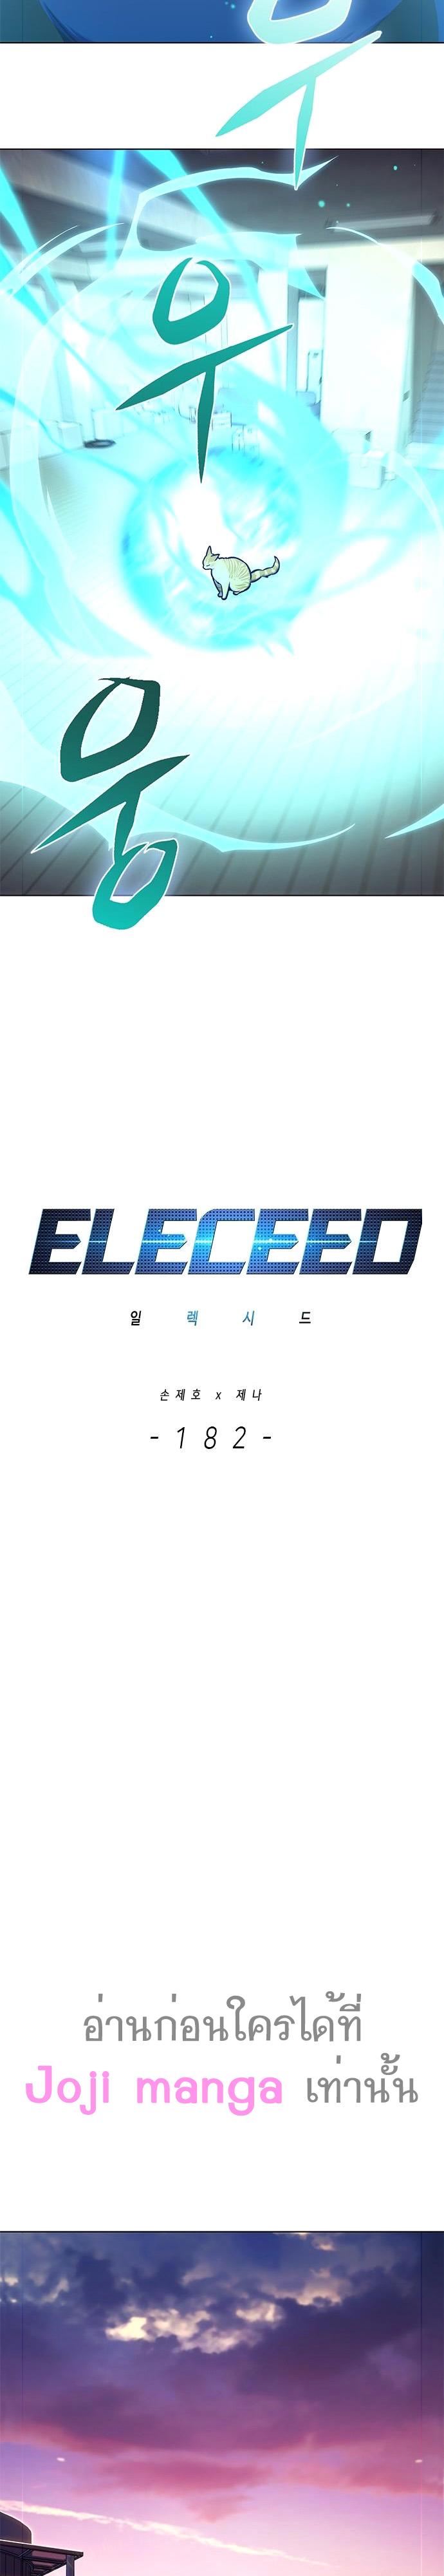 Eleceed 182 08